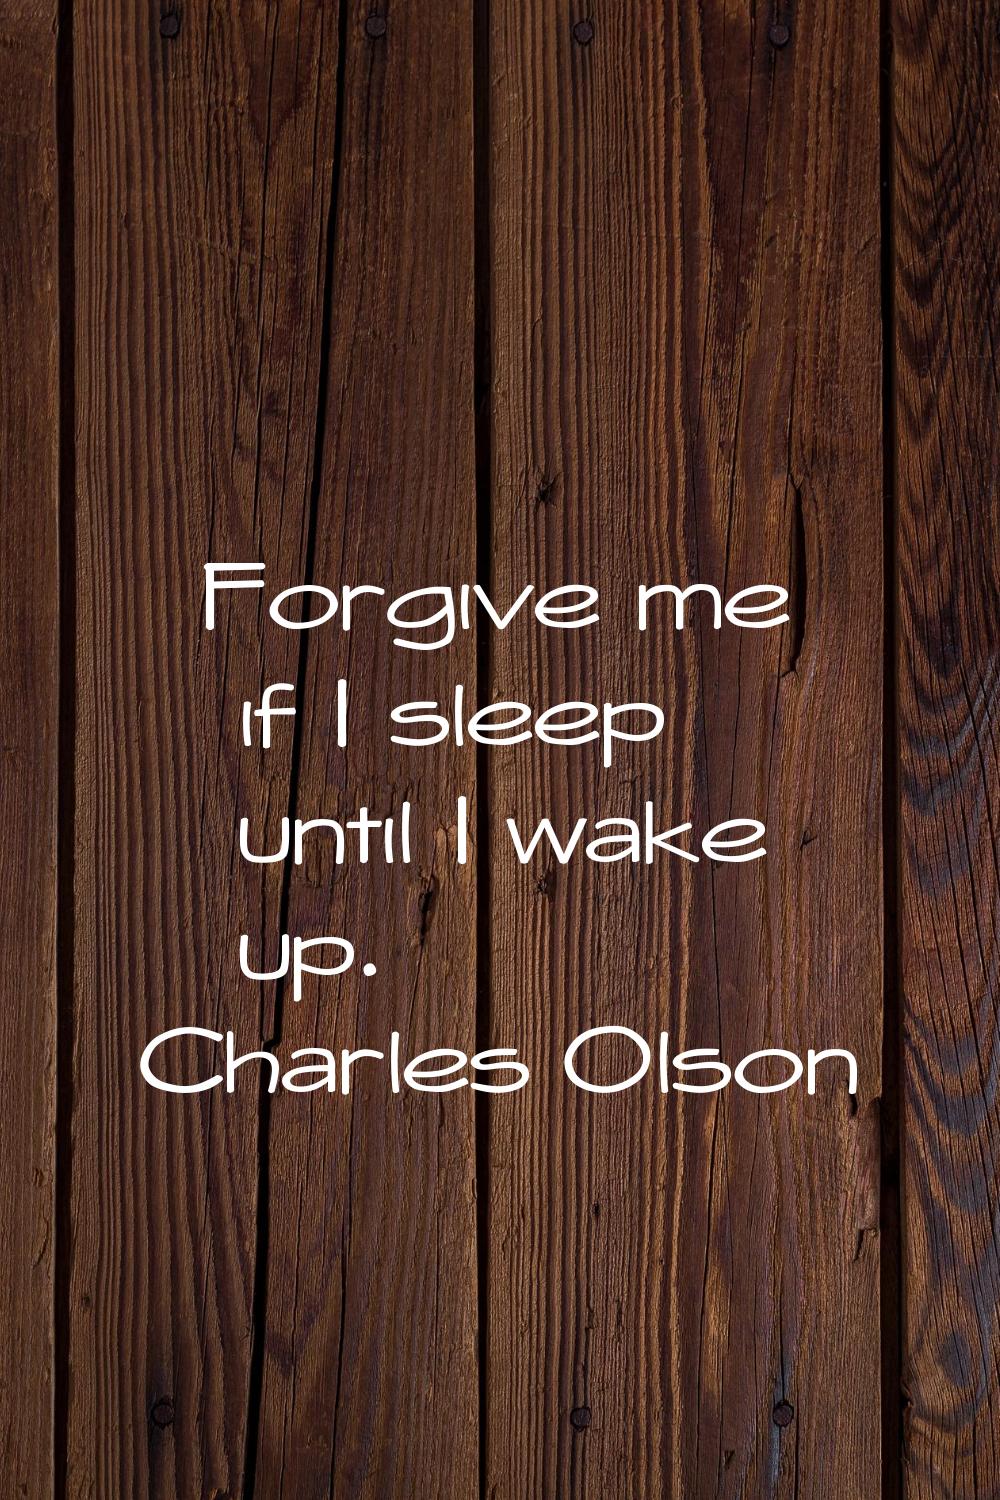 Forgive me if I sleep until I wake up.